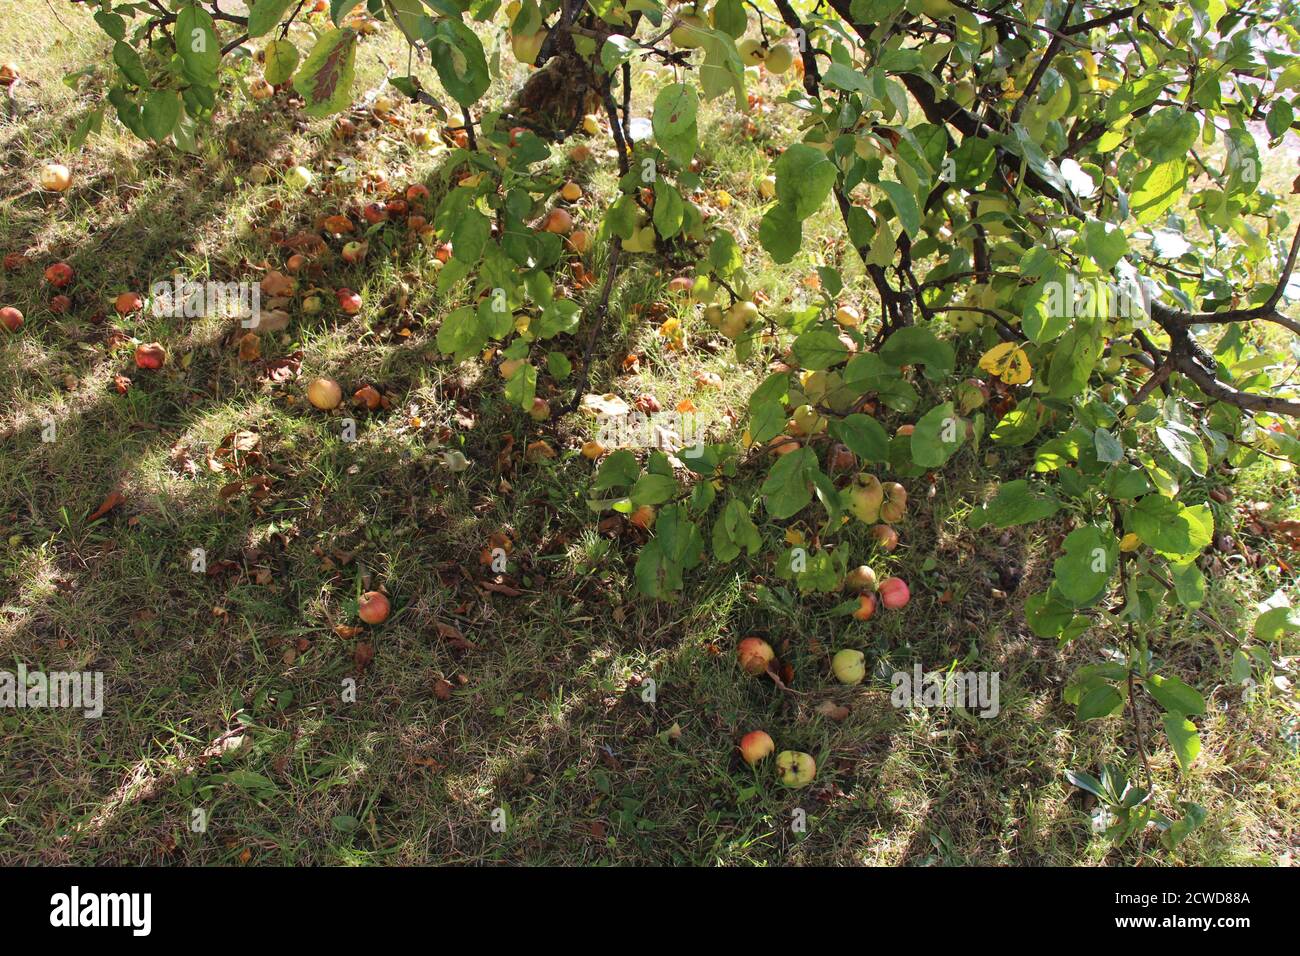 Le mele sono state fatte cadere a terra, dall'albero di mele nella strada. Alcune mele sono già fermentanti o mangiate da vespe. Foto Stock